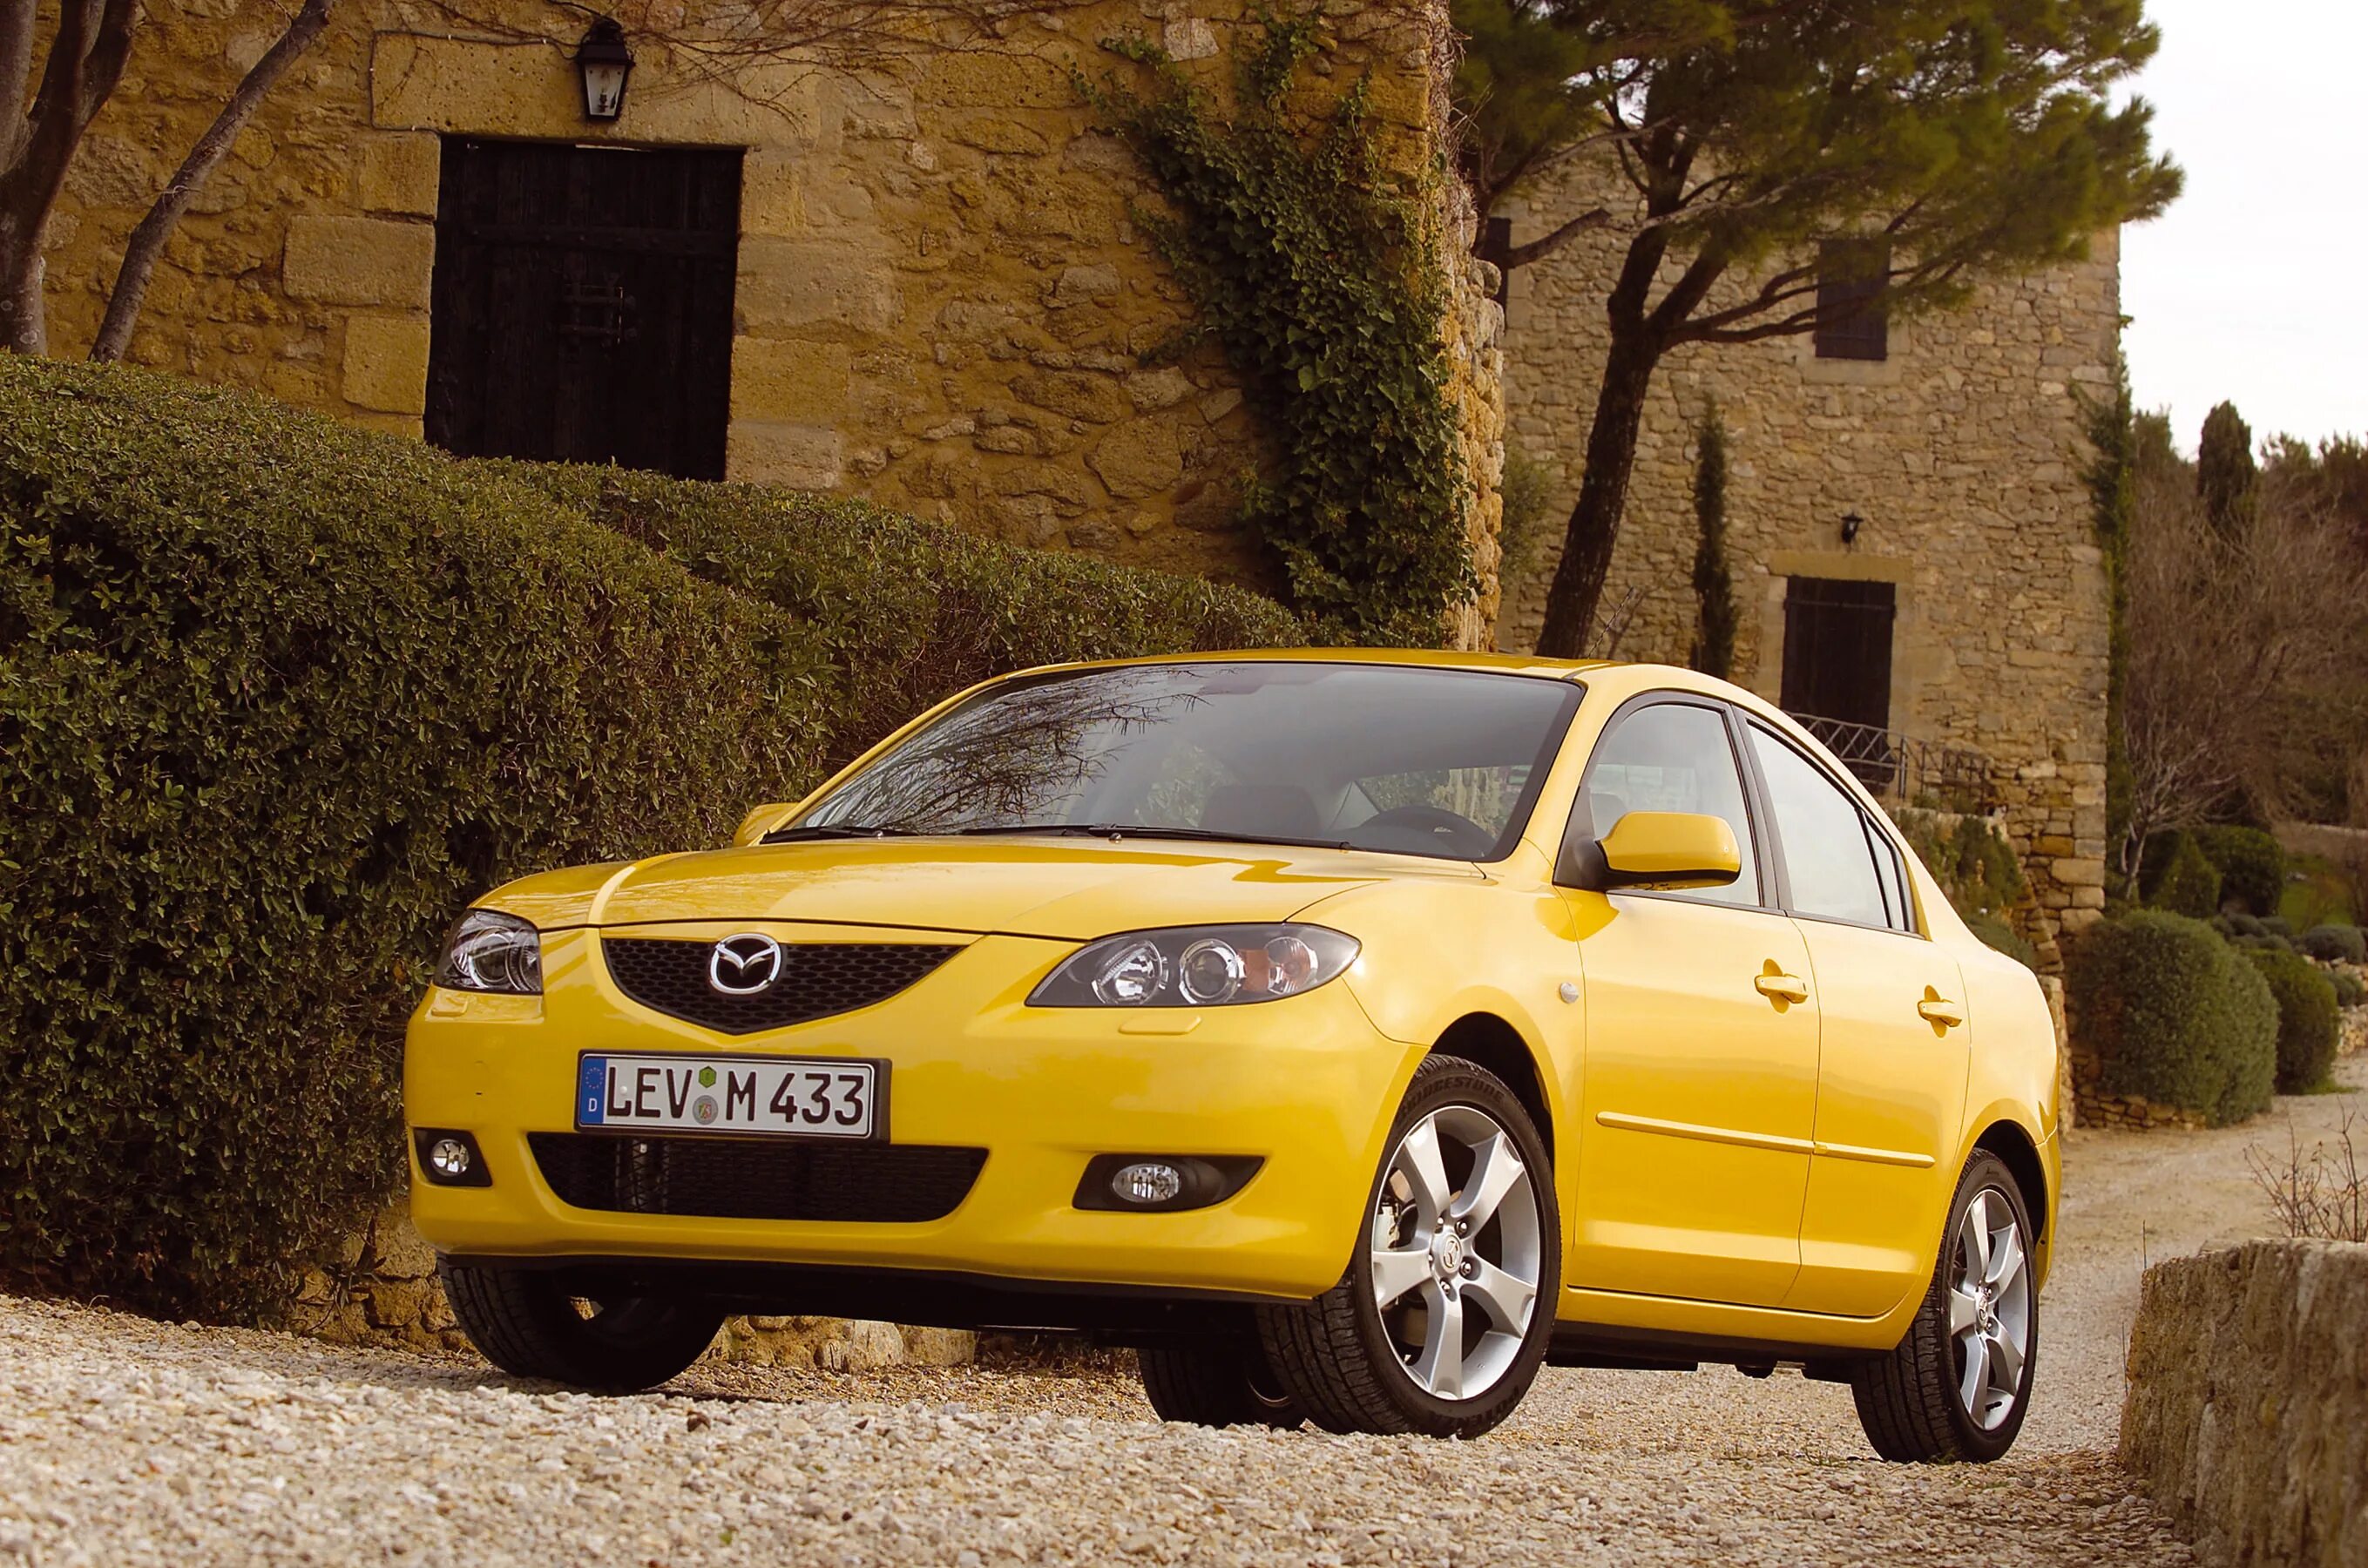 Мазда 3 2004 седан желтый. Мазда 3 желтая седан. Мазда 3 седан 2003. Мазда 3 седан 2004. Mazda желтая